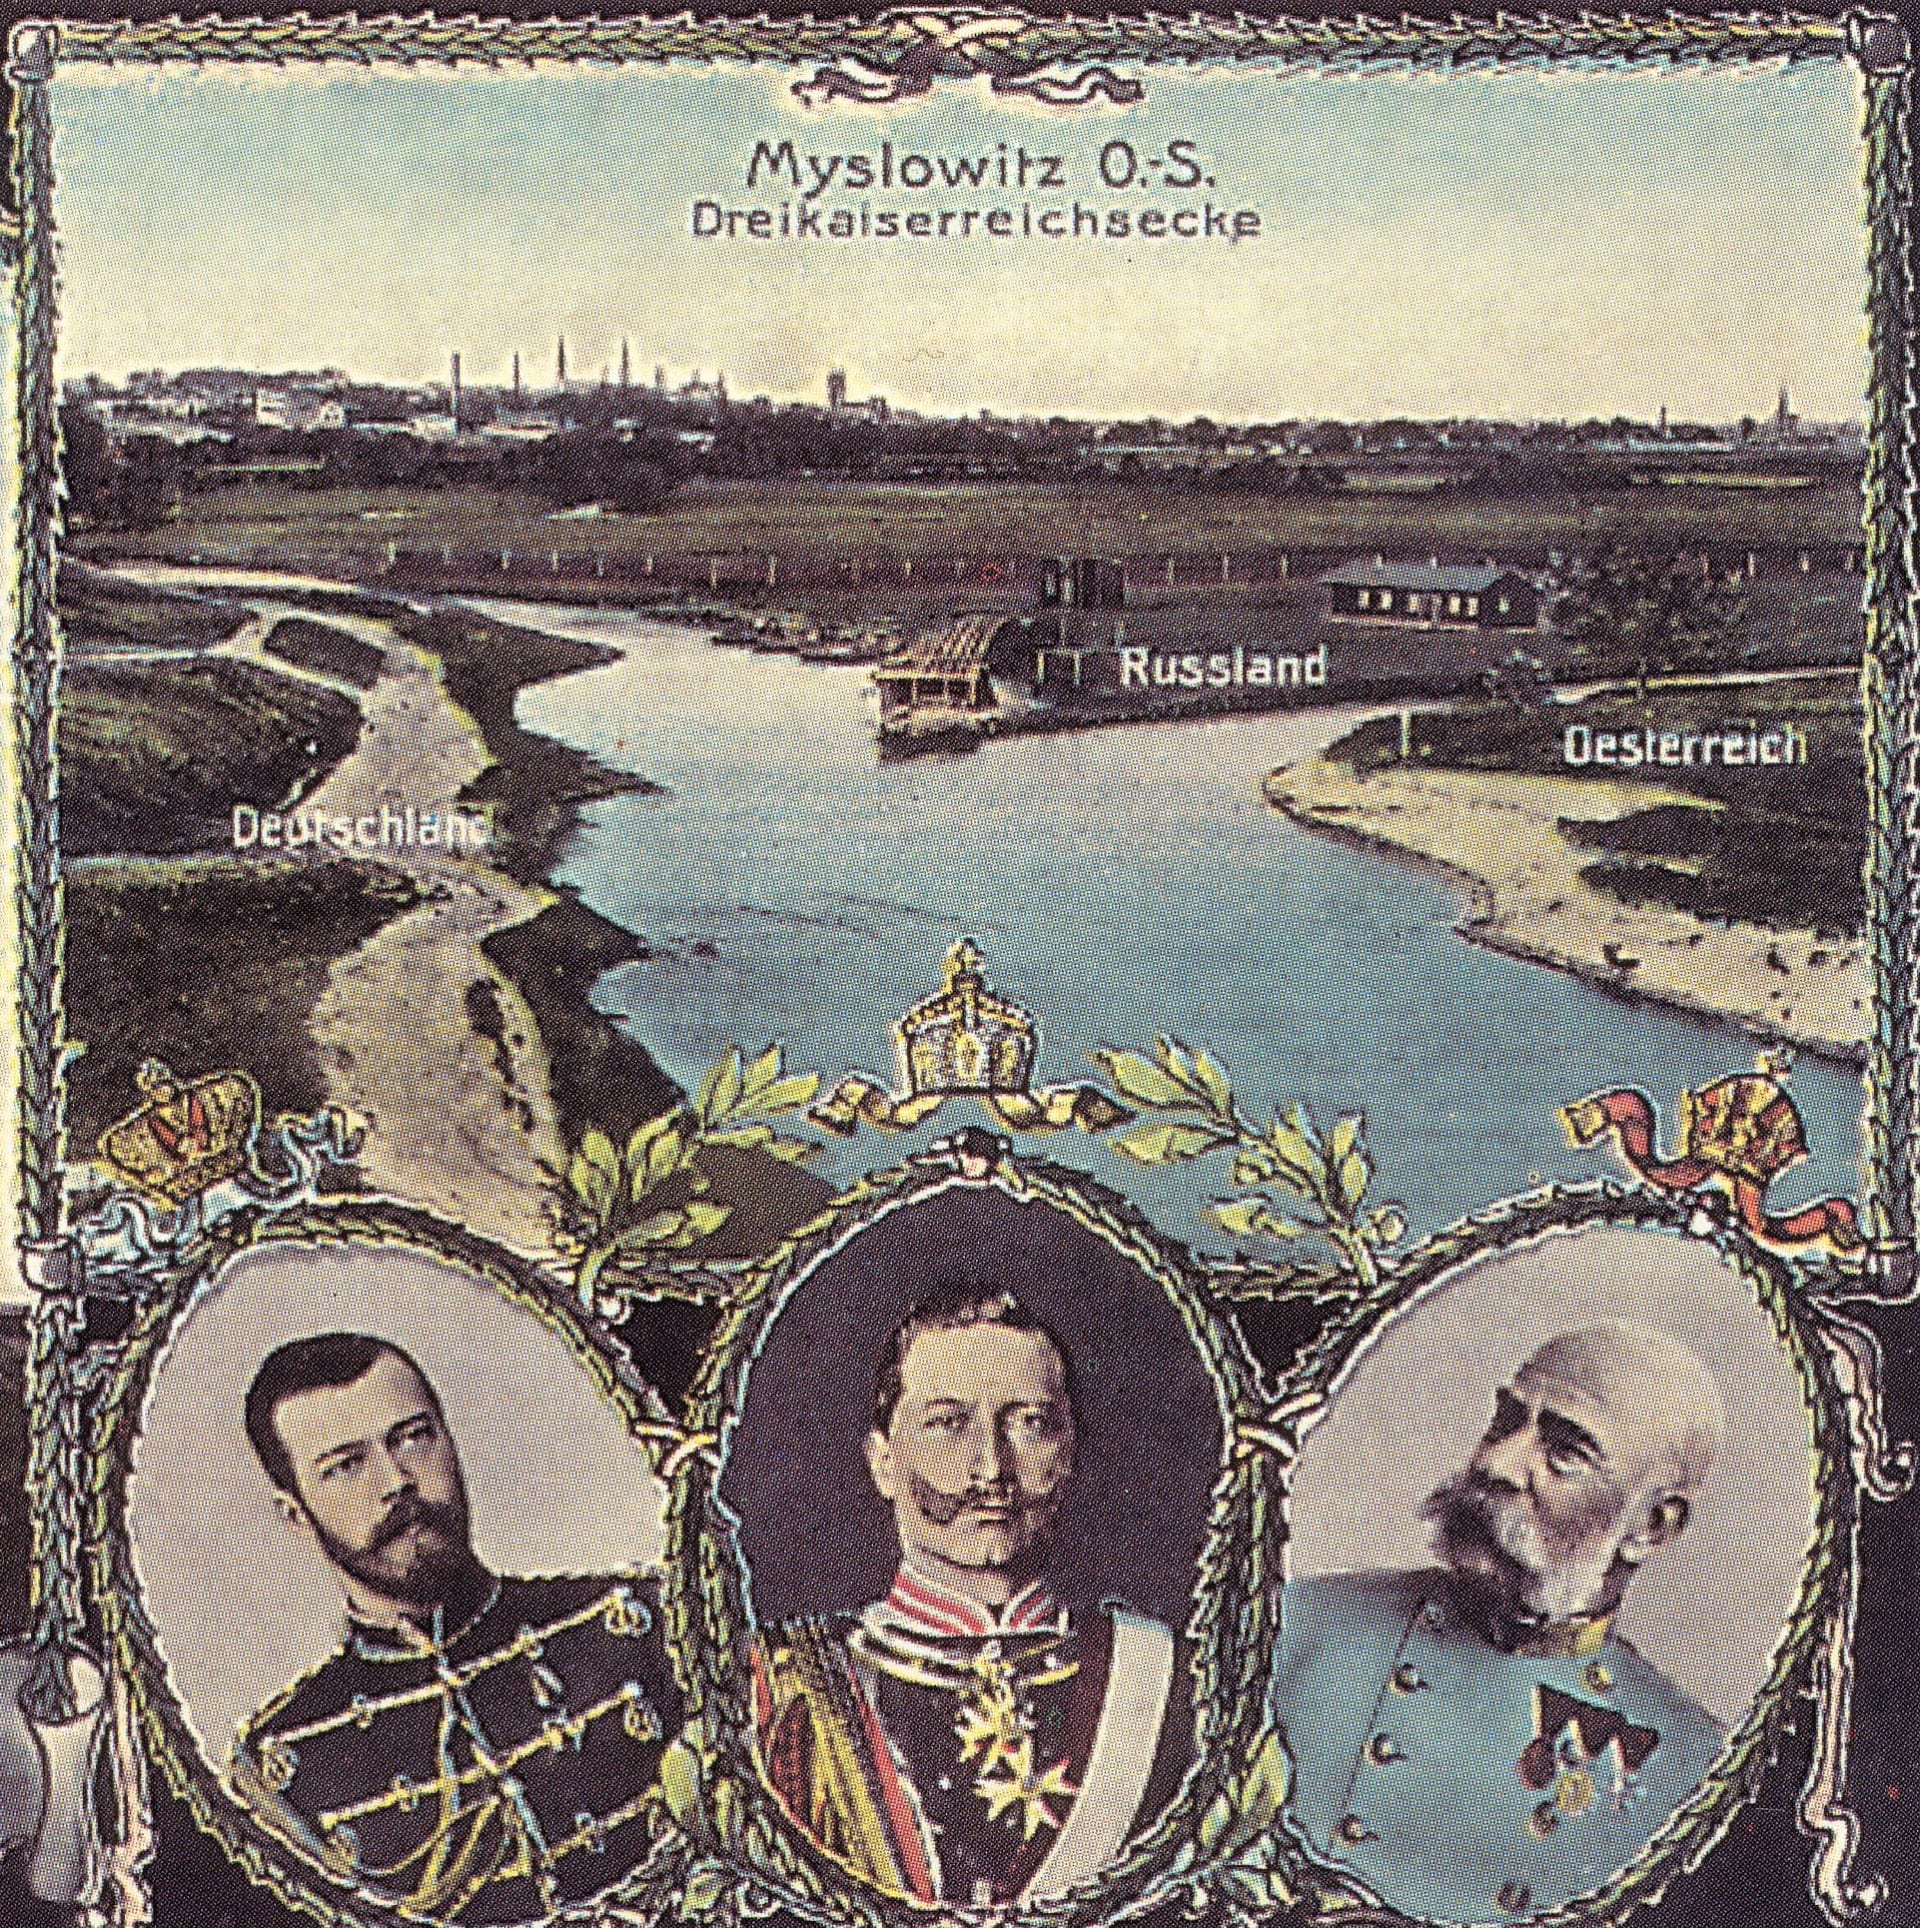 Trojmezí tří císařů u města Sosnowiec, které oddělovalo Rusko od Rakouska-Uherska a Německa v letech 1815 až 1914 . Německá pohlednice 